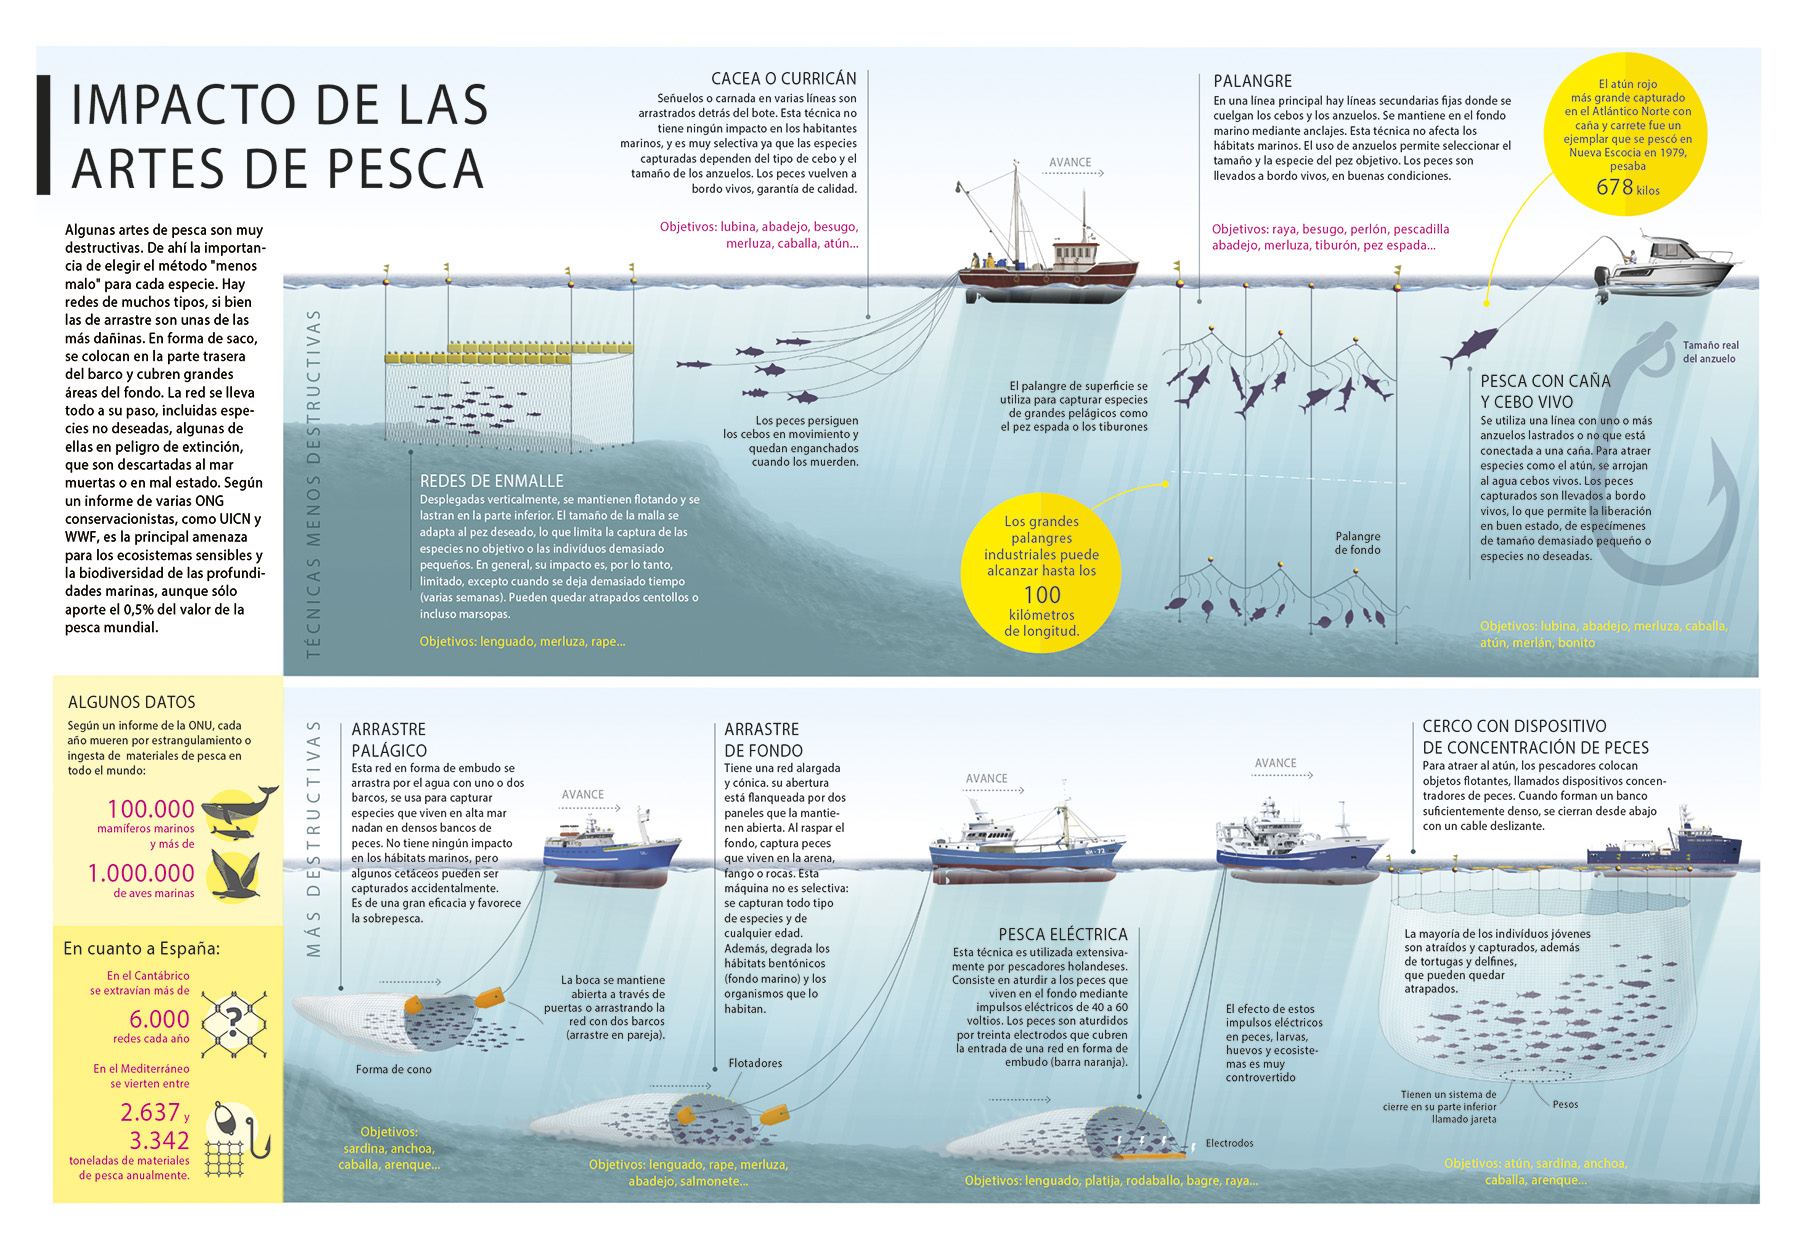 Artículos de Pesca El Mundo